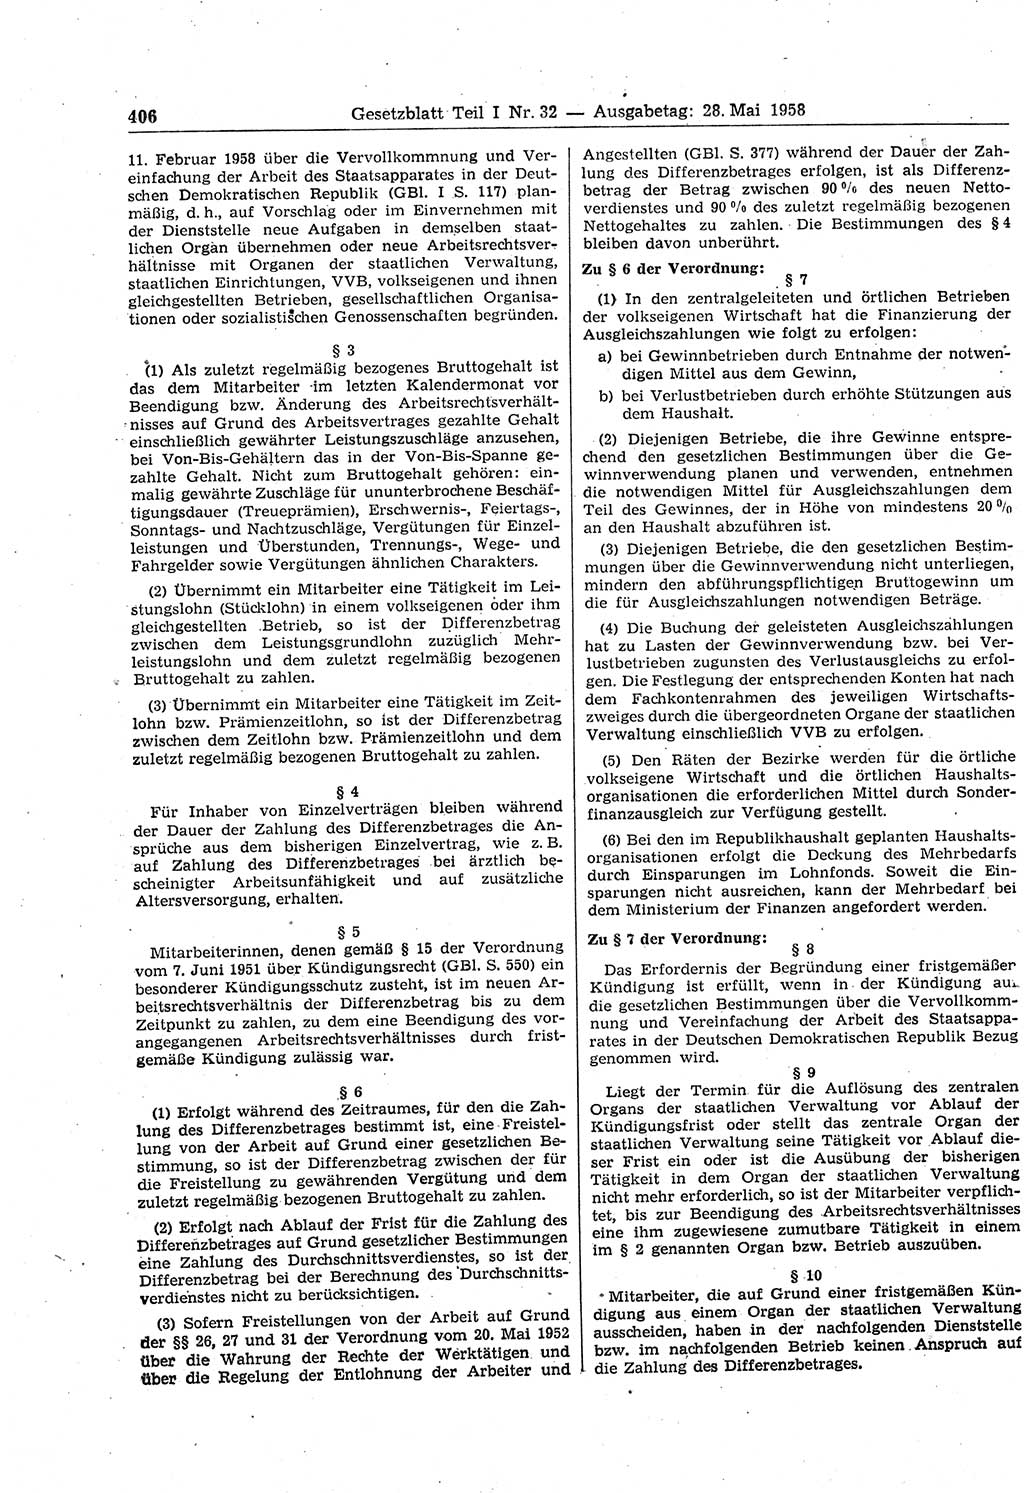 Gesetzblatt (GBl.) der Deutschen Demokratischen Republik (DDR) Teil Ⅰ 1958, Seite 406 (GBl. DDR Ⅰ 1958, S. 406)